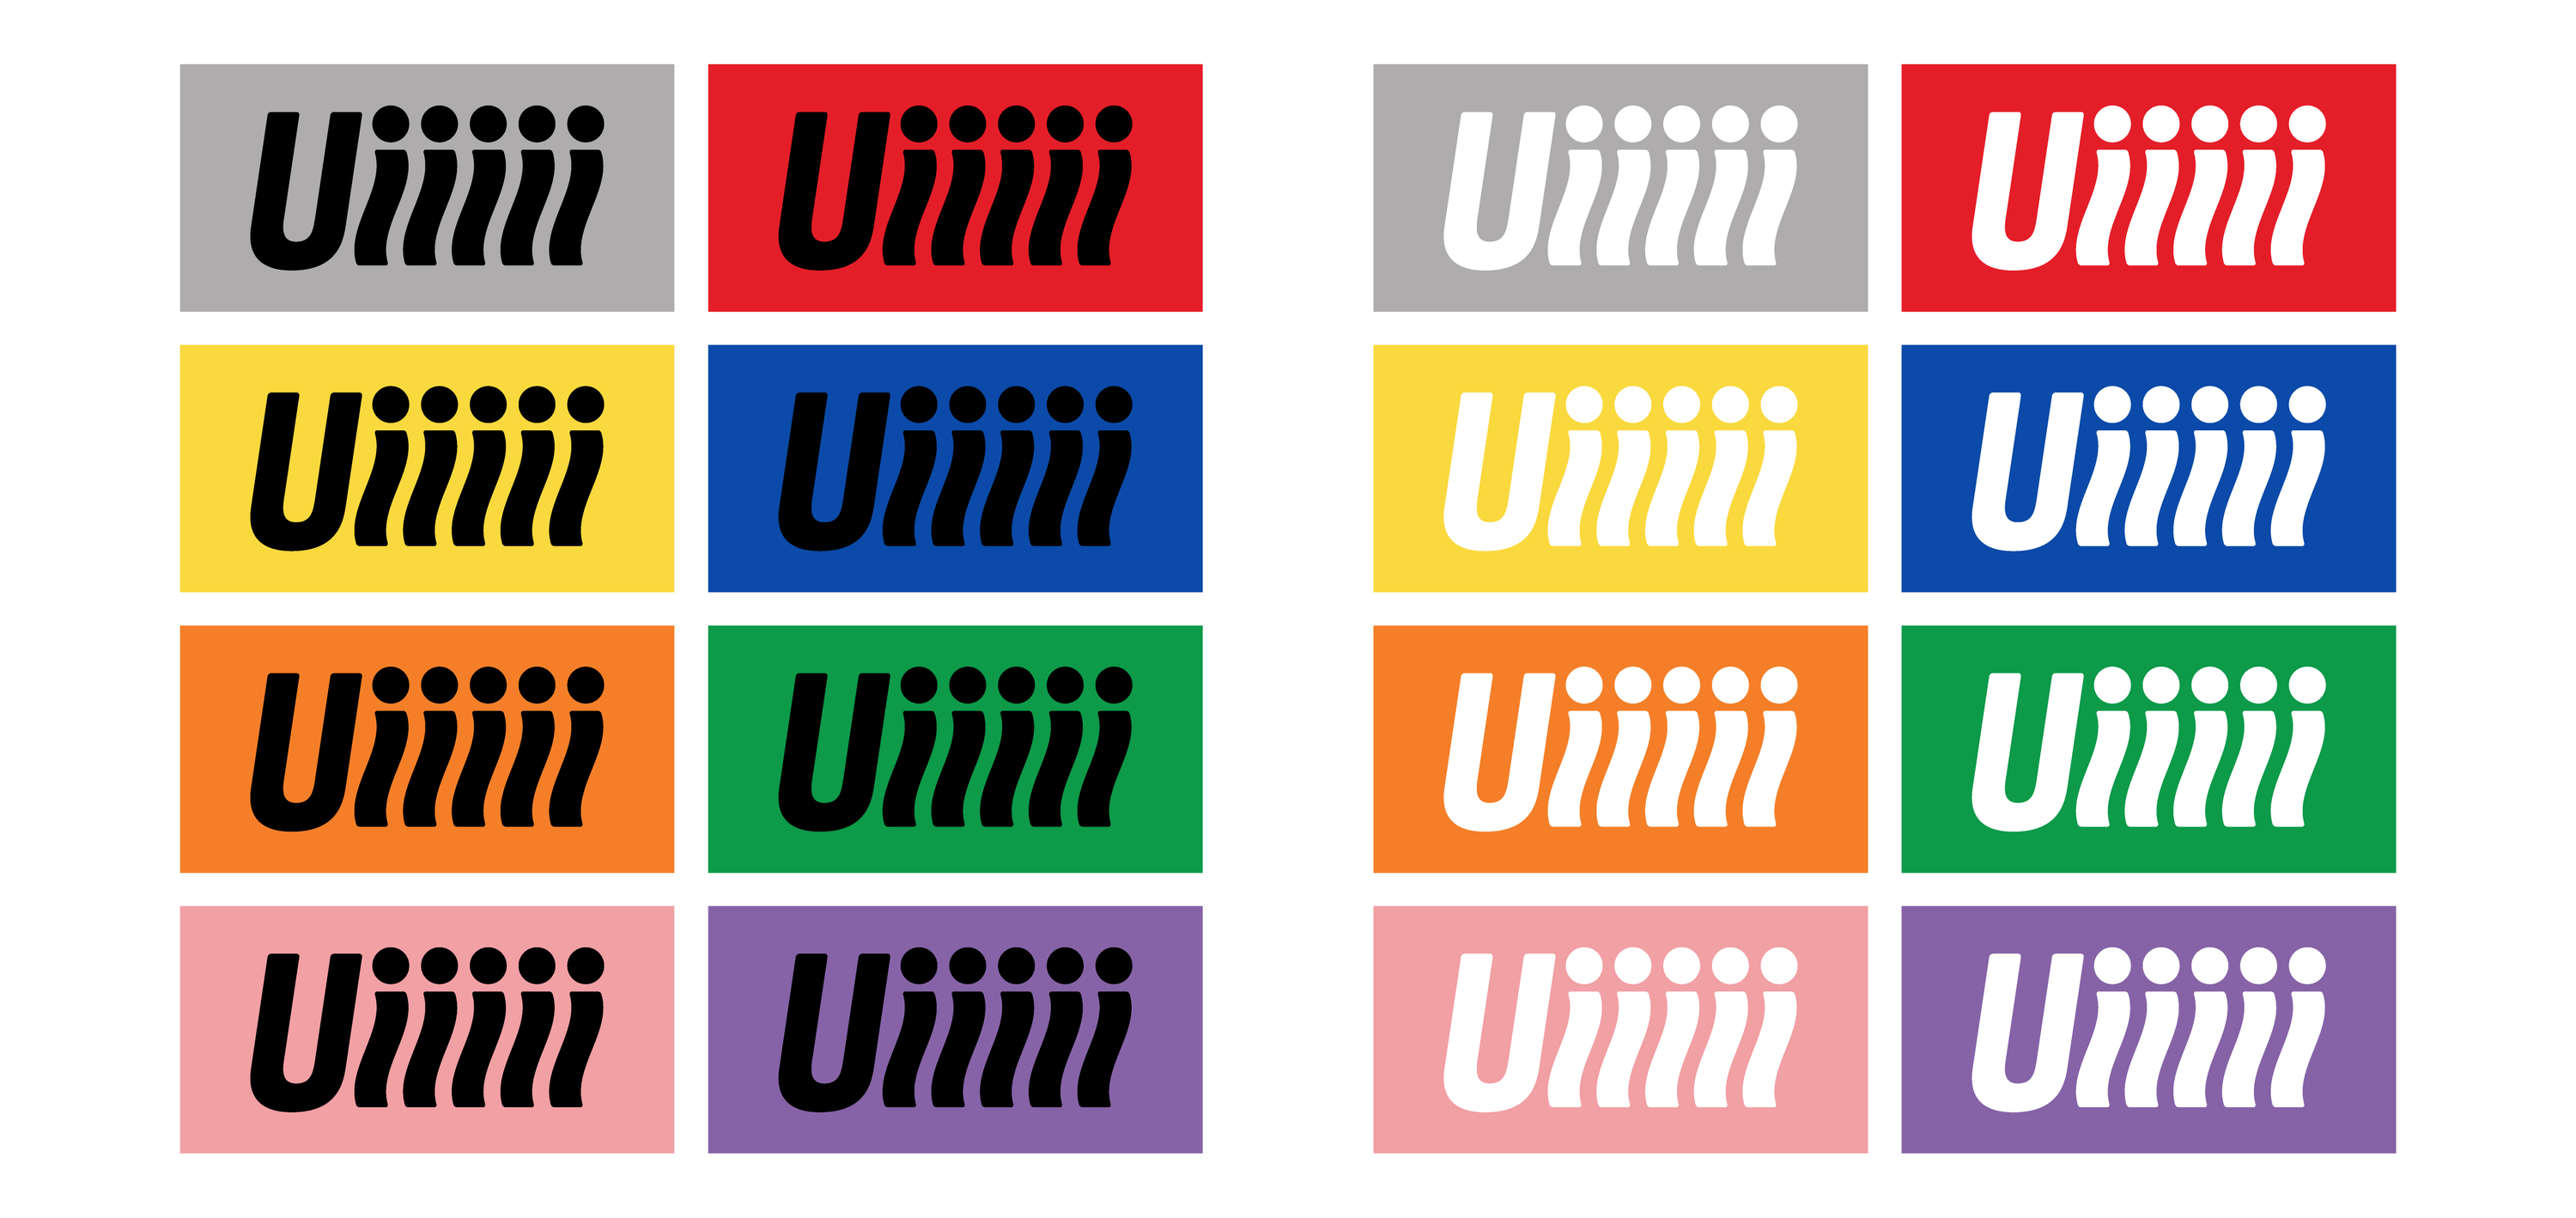 UIIIII-05